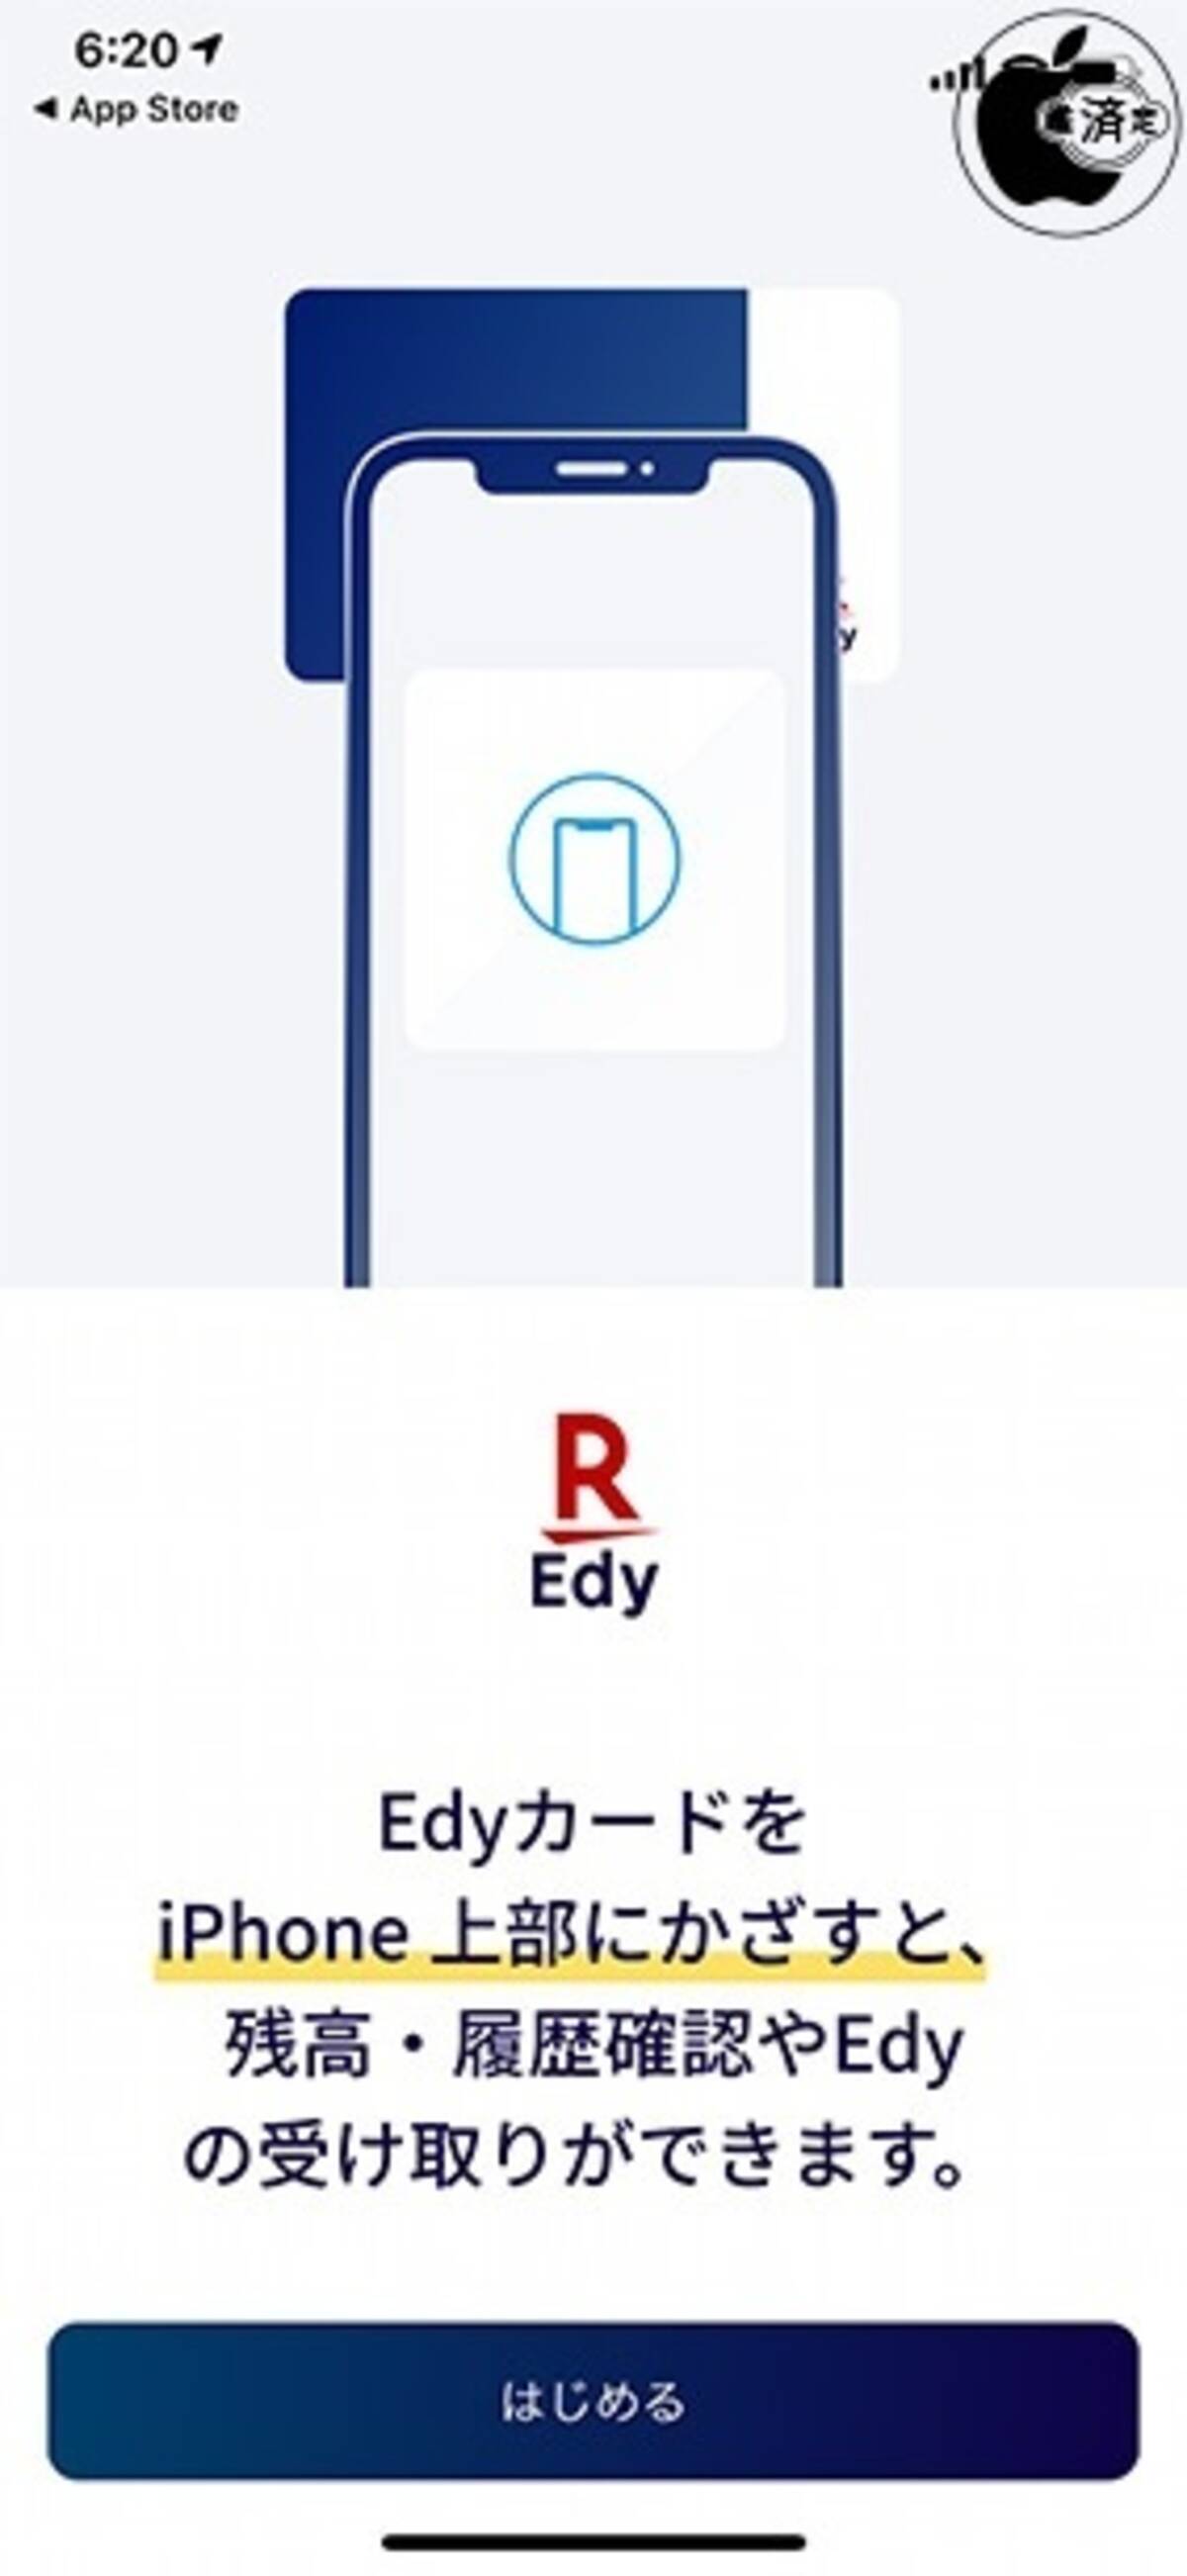 楽天 残高 履歴確認 Edyの受け取りができる Edyカード用楽天edyアプリ をリリース 19年10月29日 エキサイトニュース